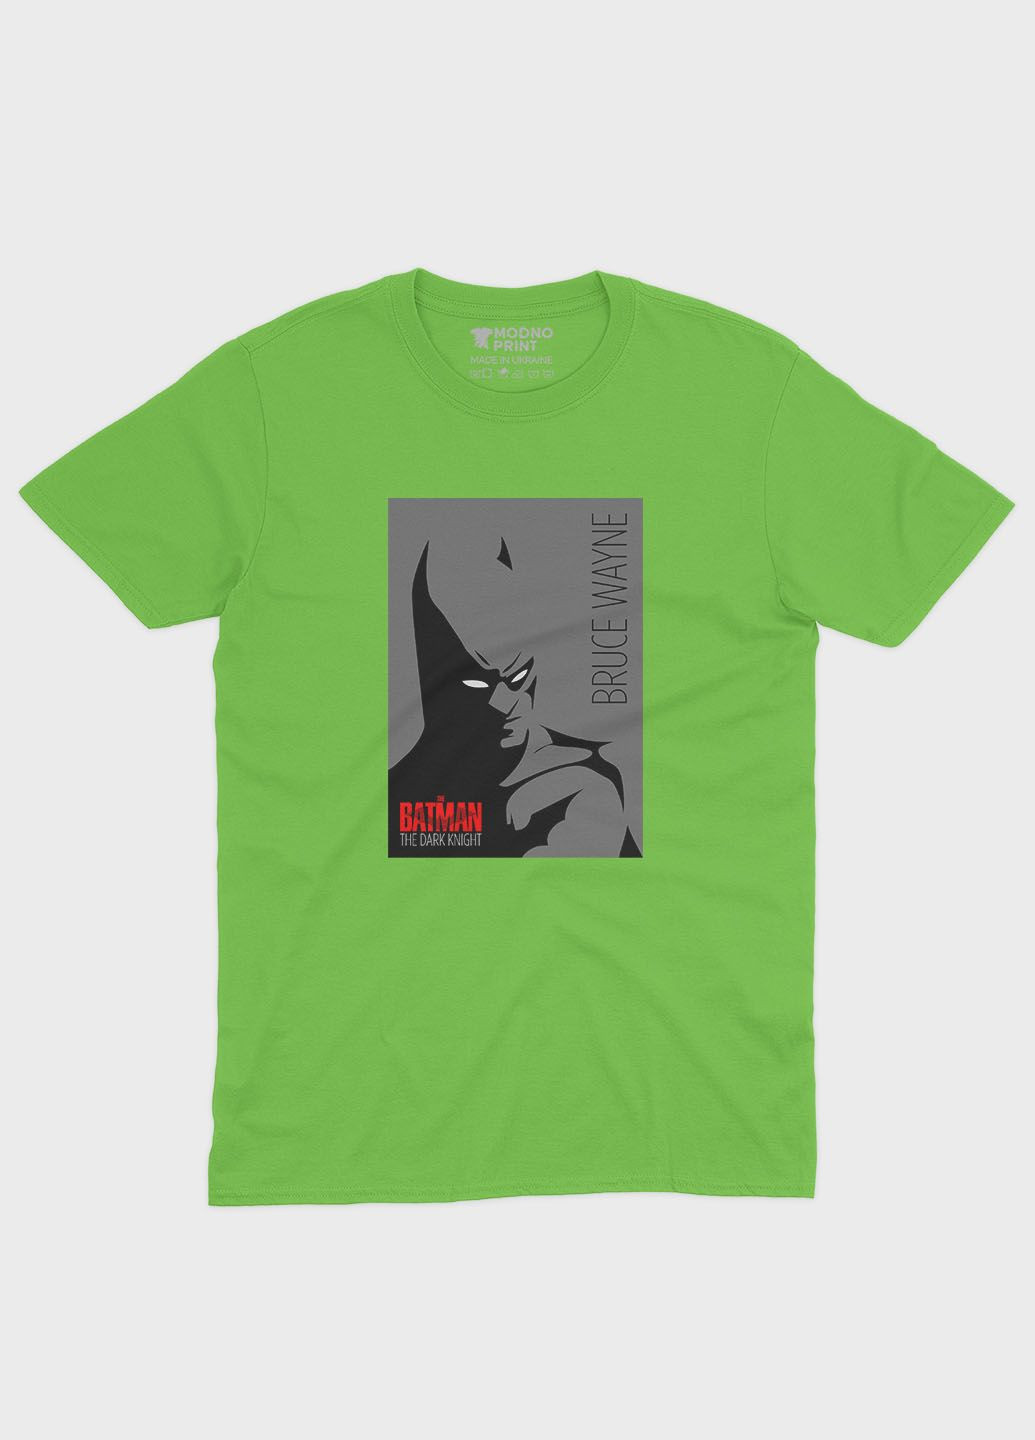 Салатовая демисезонная футболка для девочки с принтом супергероя - бэтмен (ts001-1-kiw-006-003-031-g) Modno